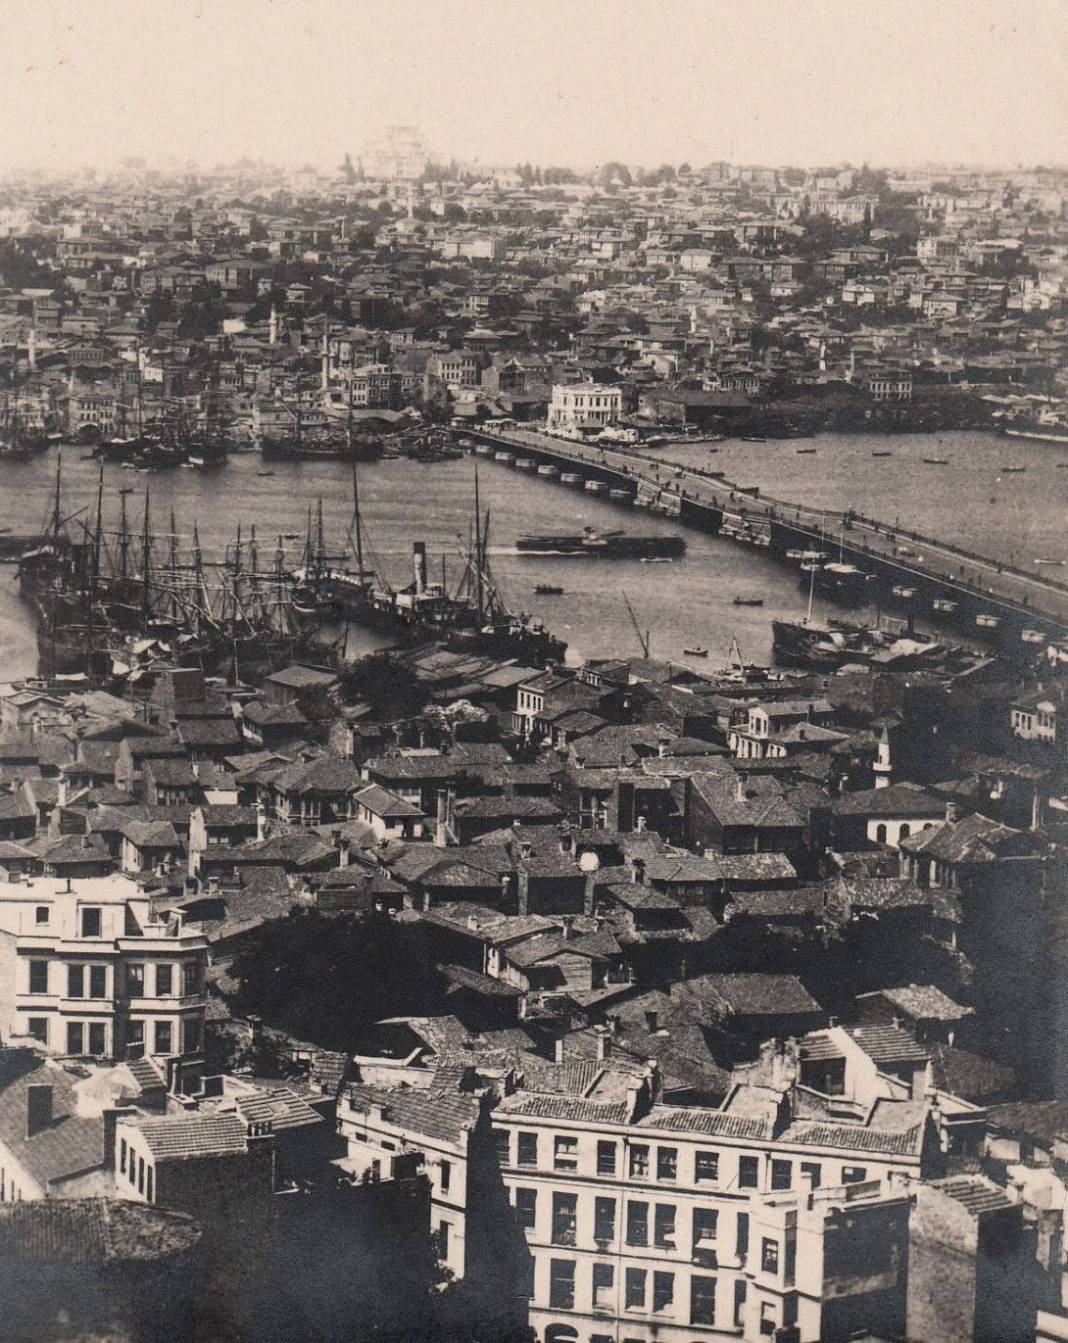 Tamamen tahtadan yapılan İstanbul’daki köprünün hikayesini biliyor musunuz? 21